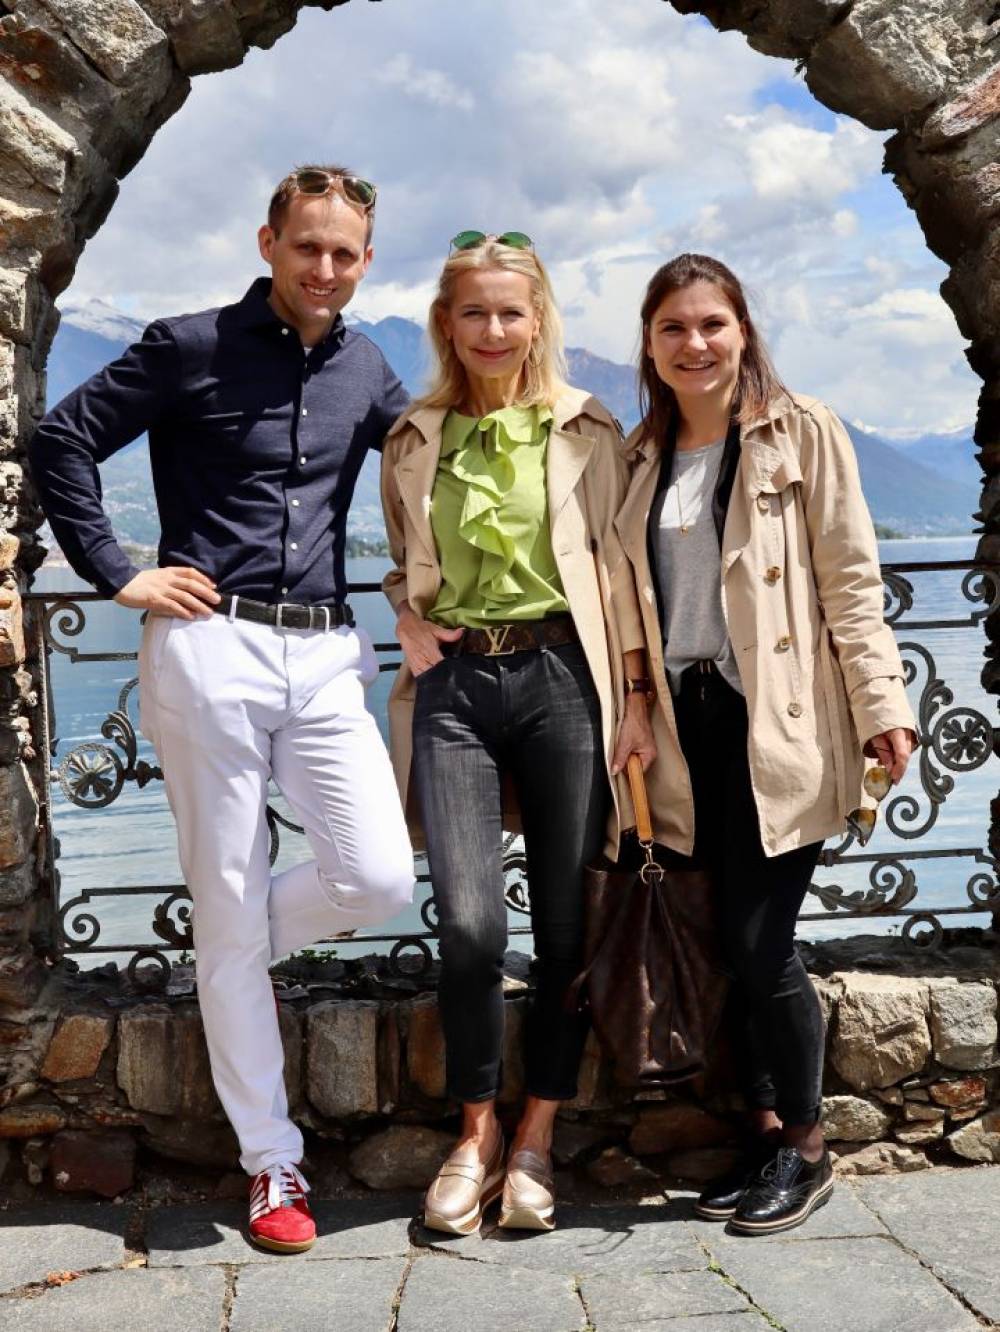 Hotel Review... Eden Roc in Ascona, die Hotelbloggerin Bibi Horst berichtet über ihre Erfahrungen während ihres Aufenthaltes in Ascona und mit der Tschuggenhotelgroup